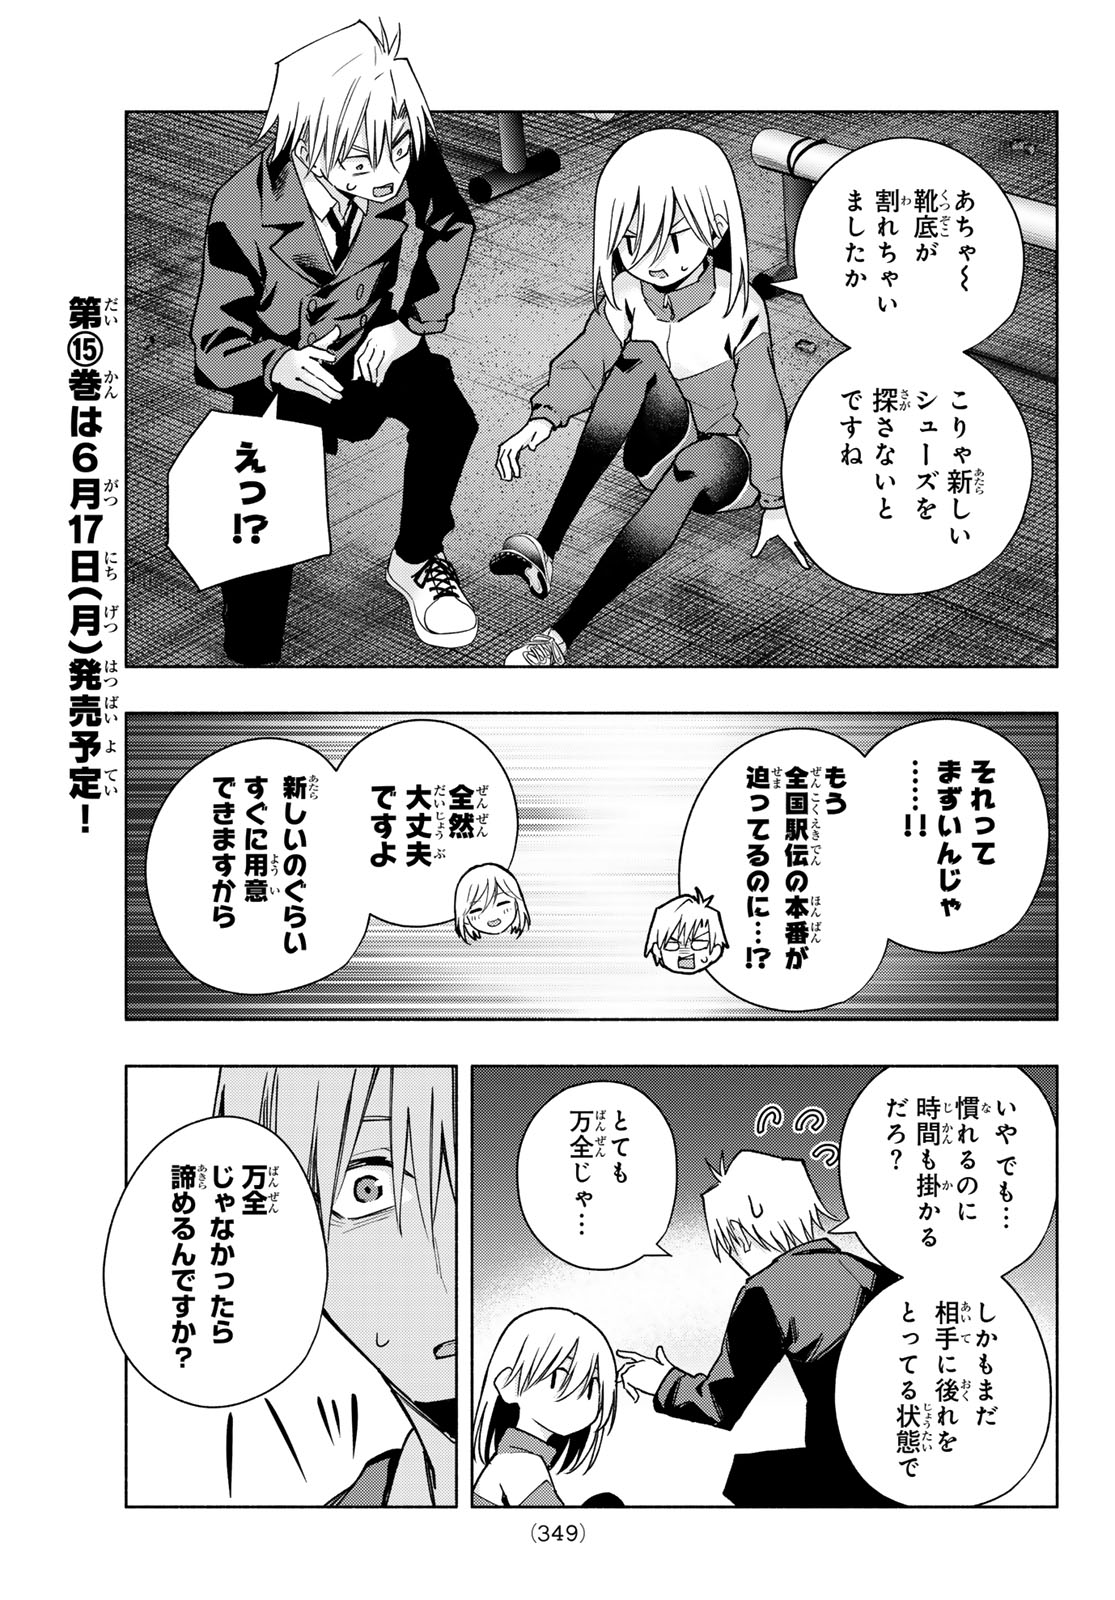 Amagami-san Chi no Enmusubi - Chapter 136 - Page 11